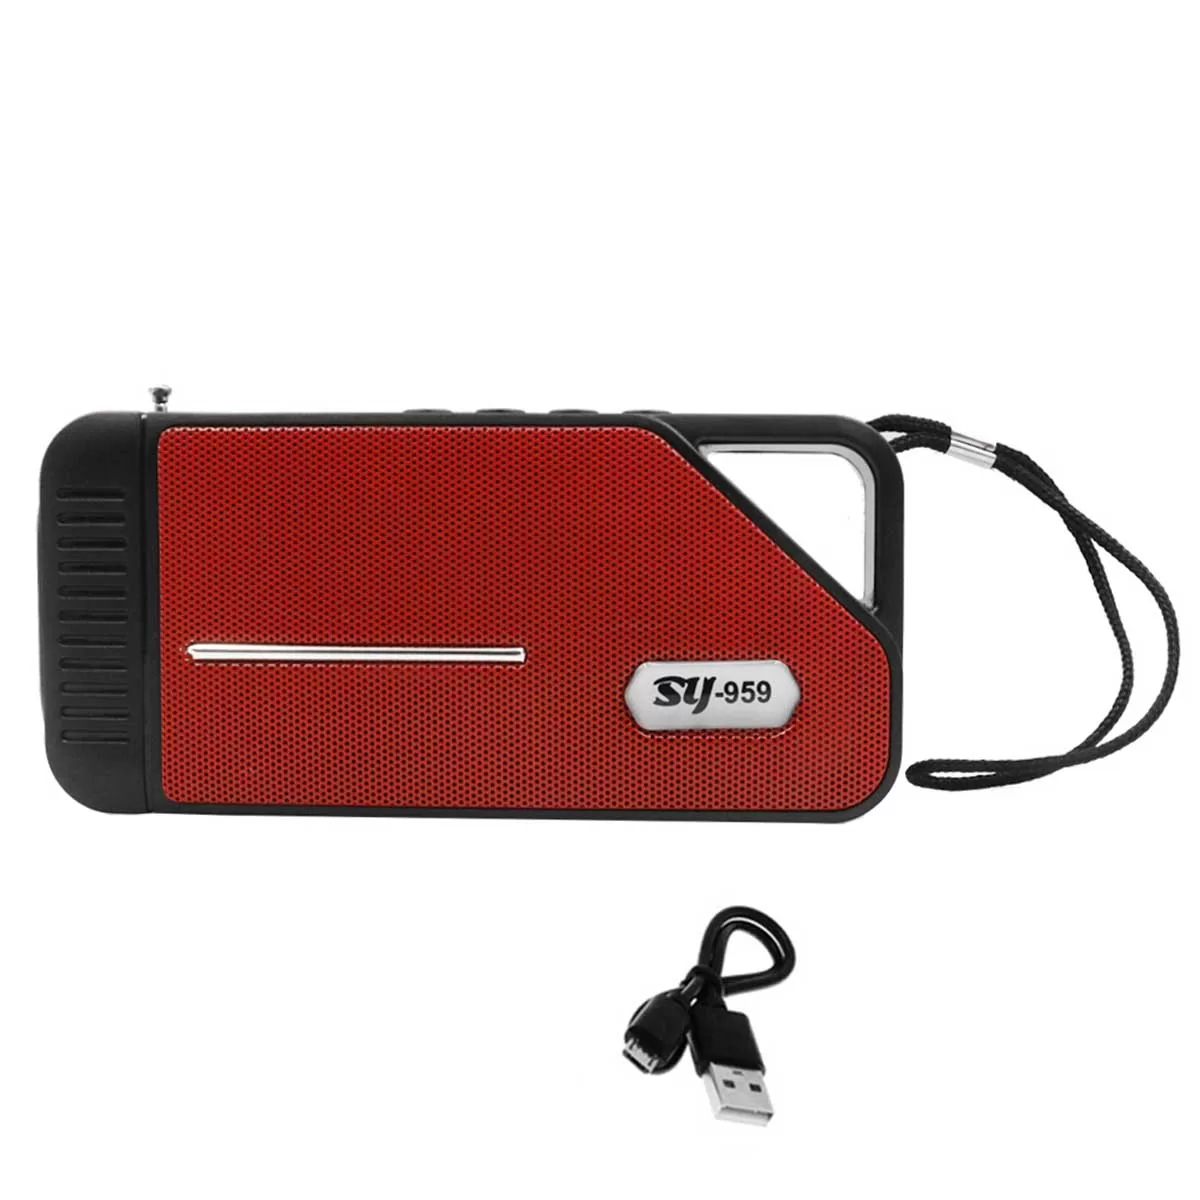 Φορητό Ηχείο Bluetooth με Ραδιόφωνο TF, USB, και Ηλιακό Πάνελ SY-959-R Κόκκινο